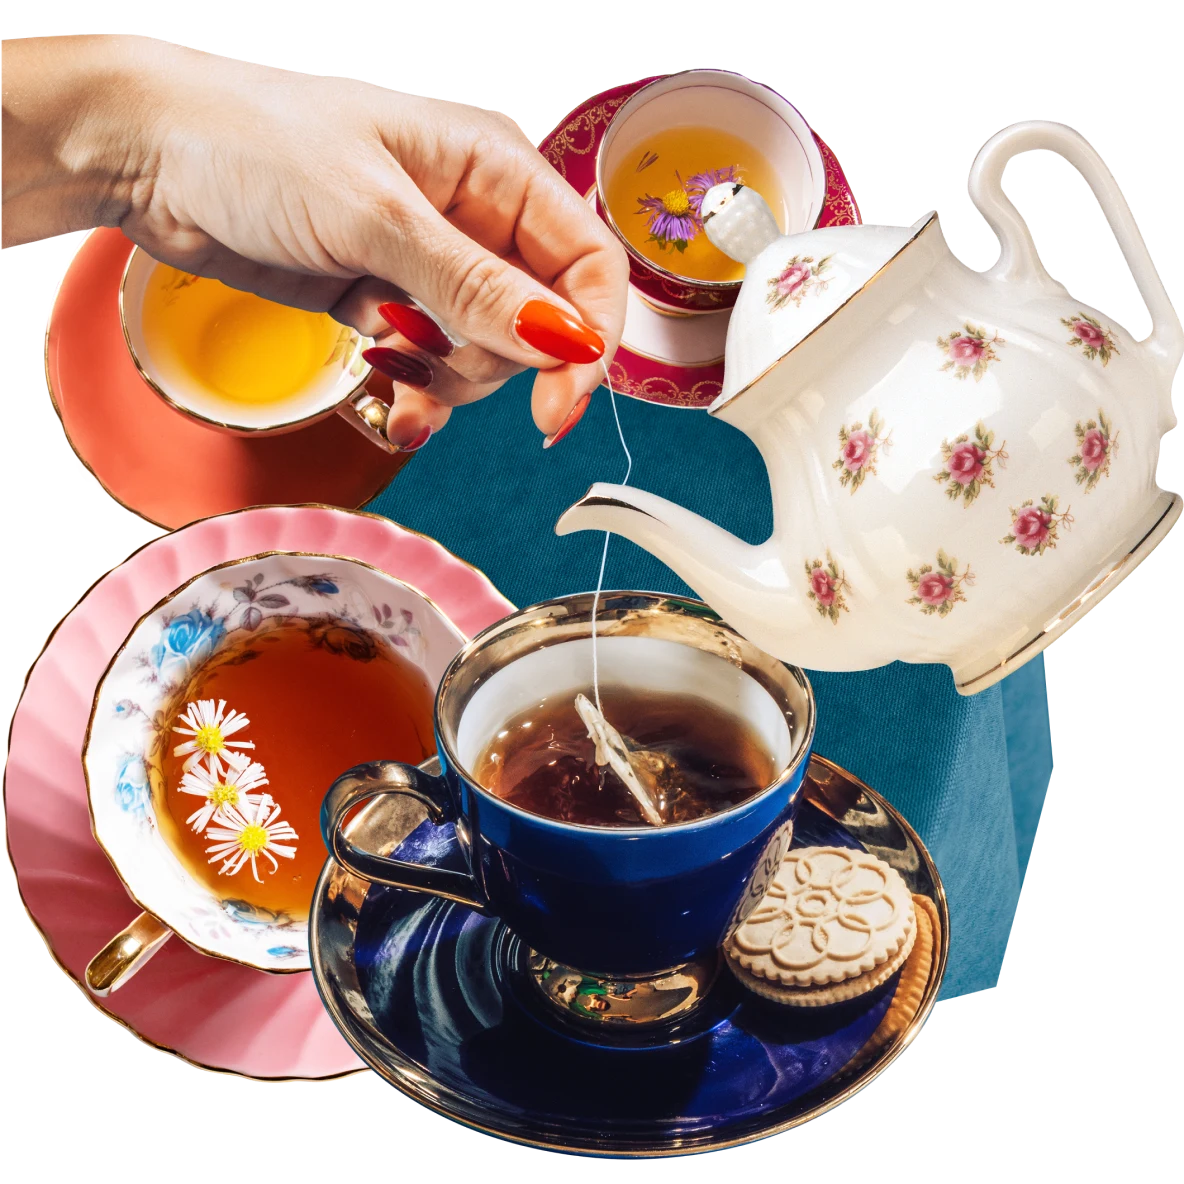 Collage de tazas de té llenas con infusiones de tonos oscuros y ámbar. Tetera blanca con rosas rosa inclinada hacia abajo. Una mano de piel clara sumergiendo un saquito de té en una taza llena.